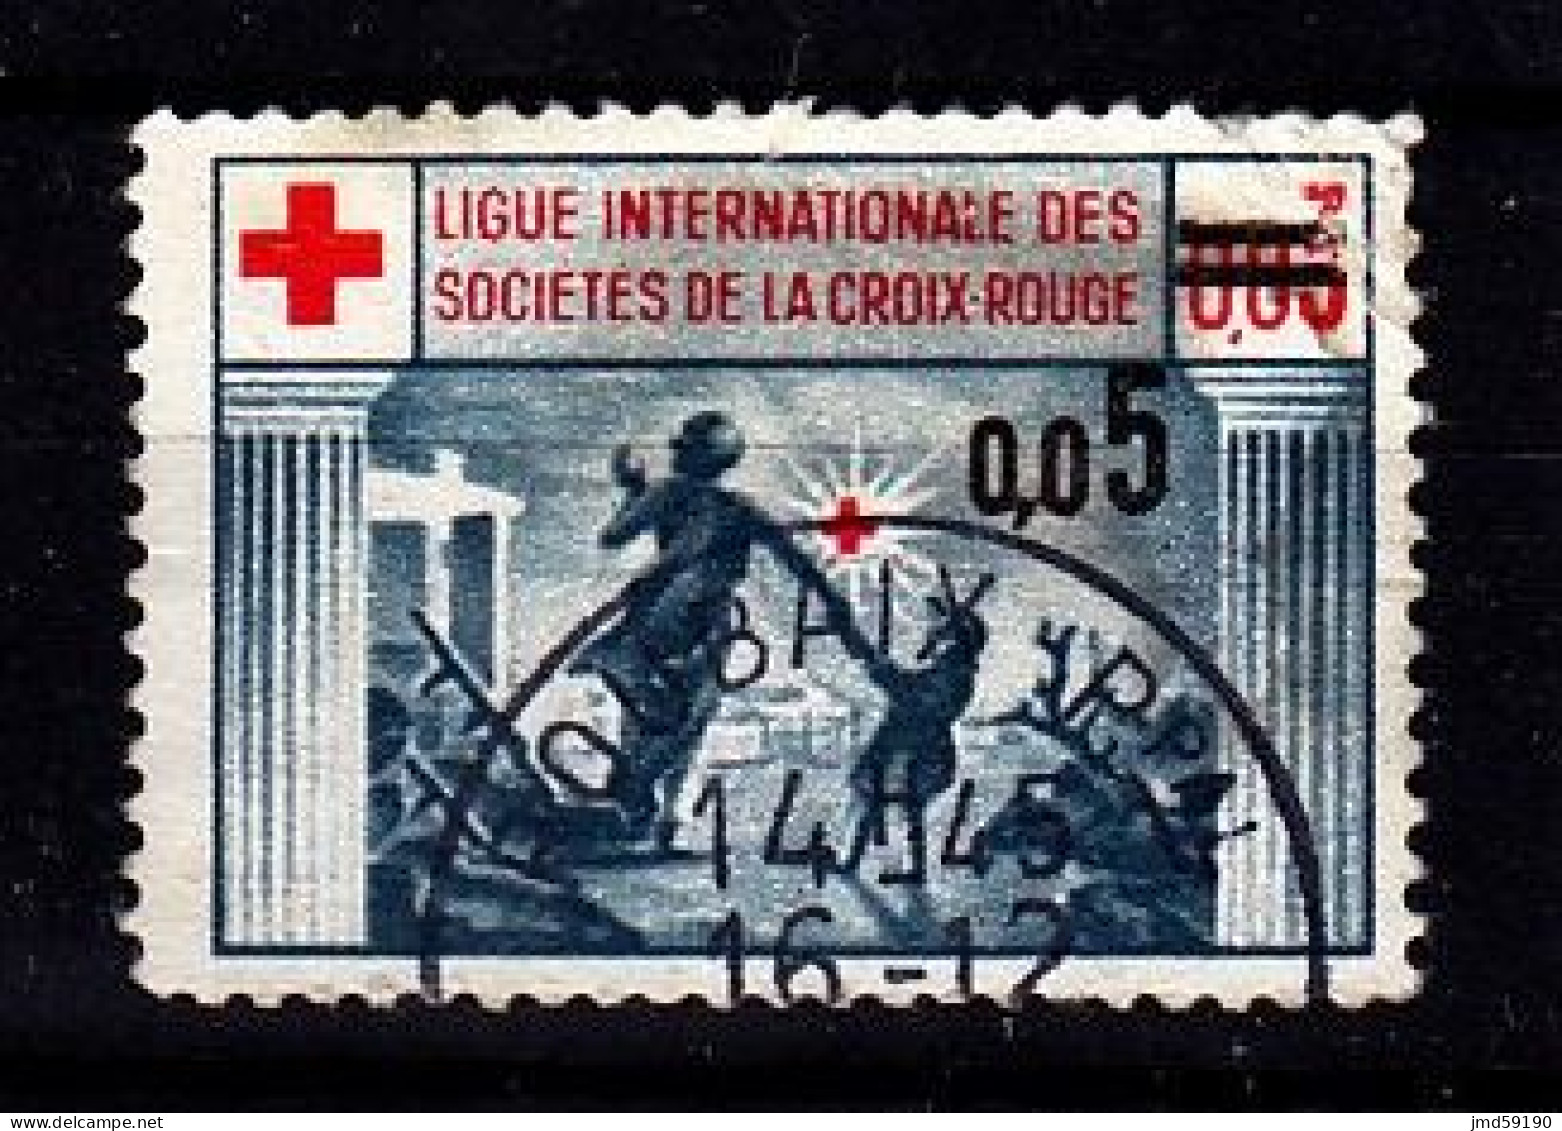 France - Vignette Oblitérée Ligue Internationale Des Sociétés De La Croix Rouge Avec Surcharge 0.05 - Rotes Kreuz